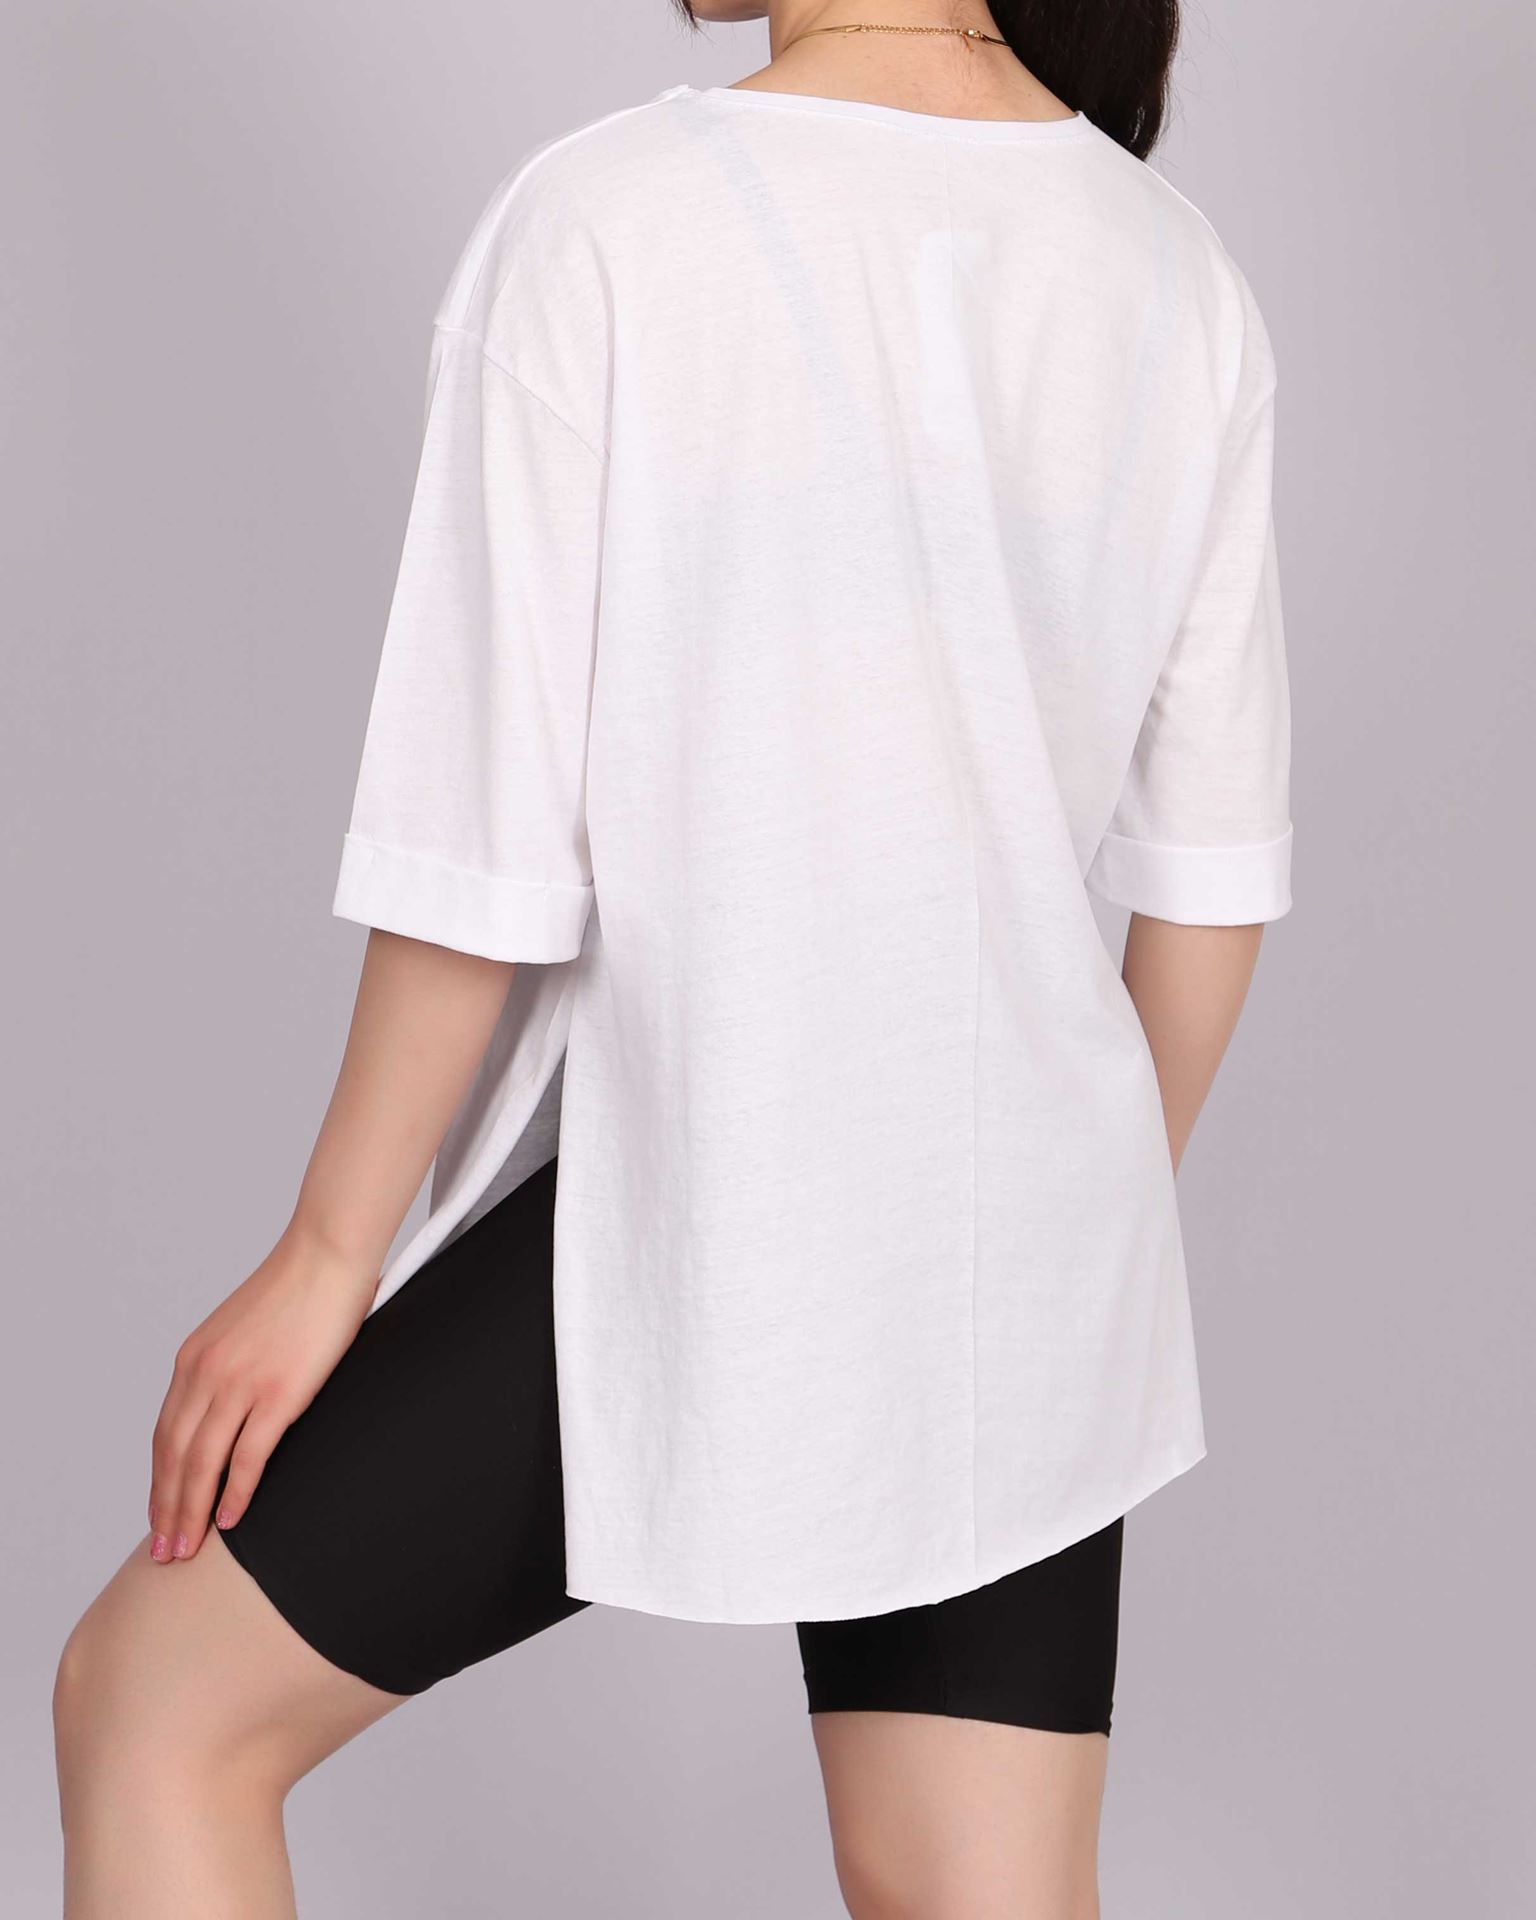  Beyaz Baskılı Yırtmaçlı T-shirt TSH304